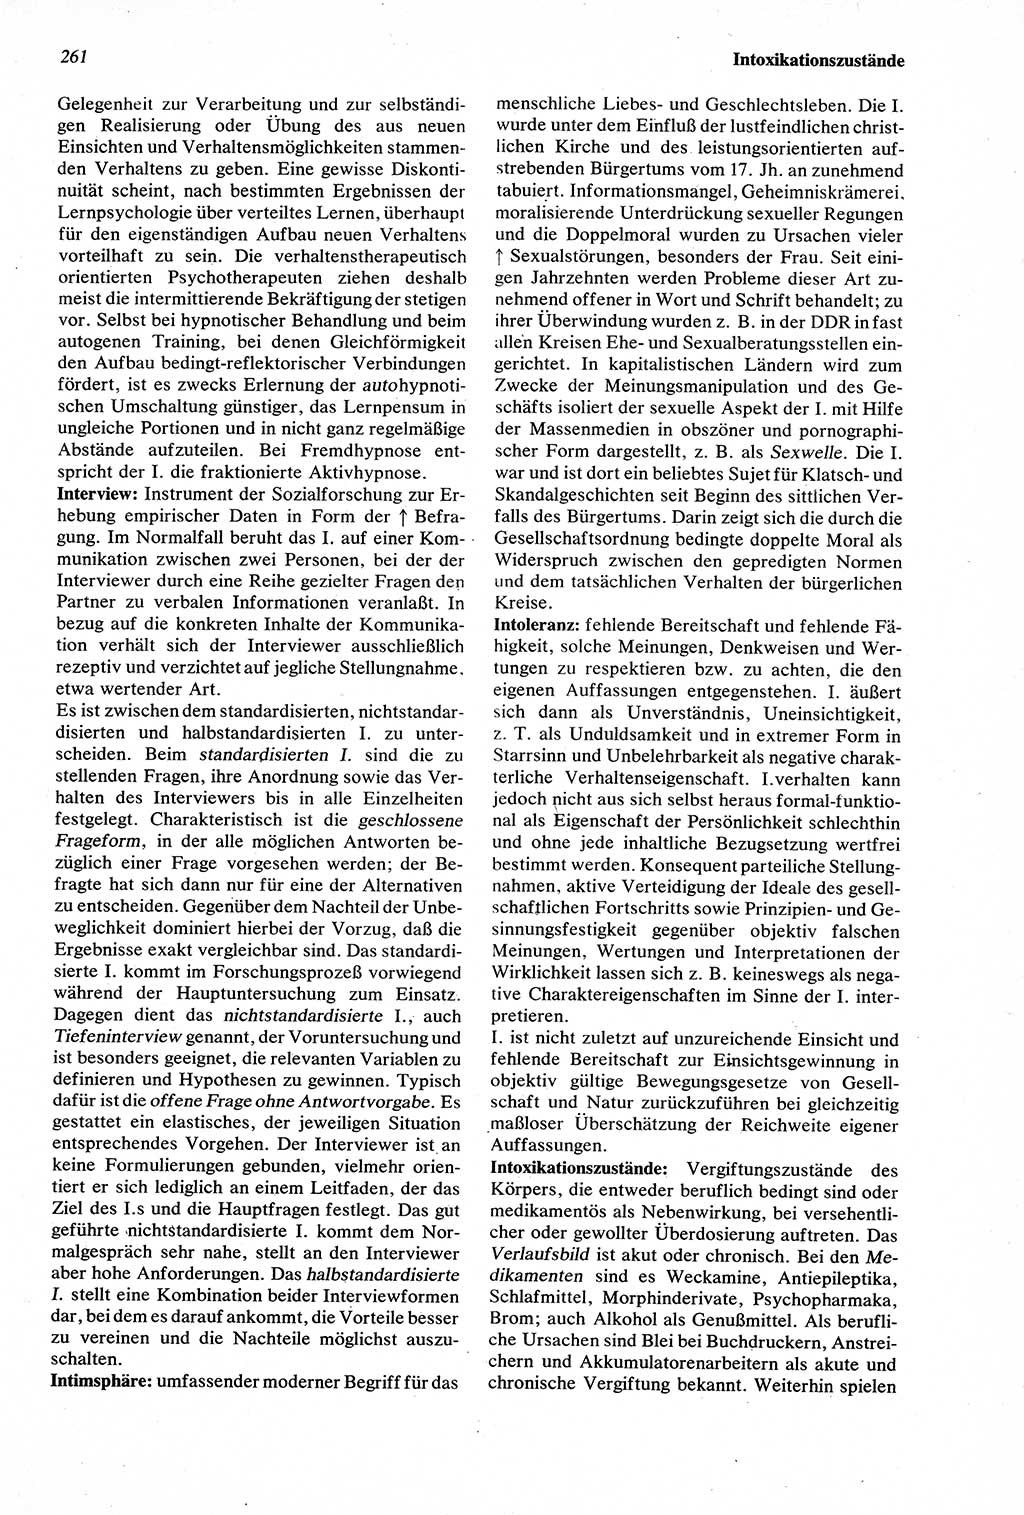 Wörterbuch der Psychologie [Deutsche Demokratische Republik (DDR)] 1976, Seite 261 (Wb. Psych. DDR 1976, S. 261)